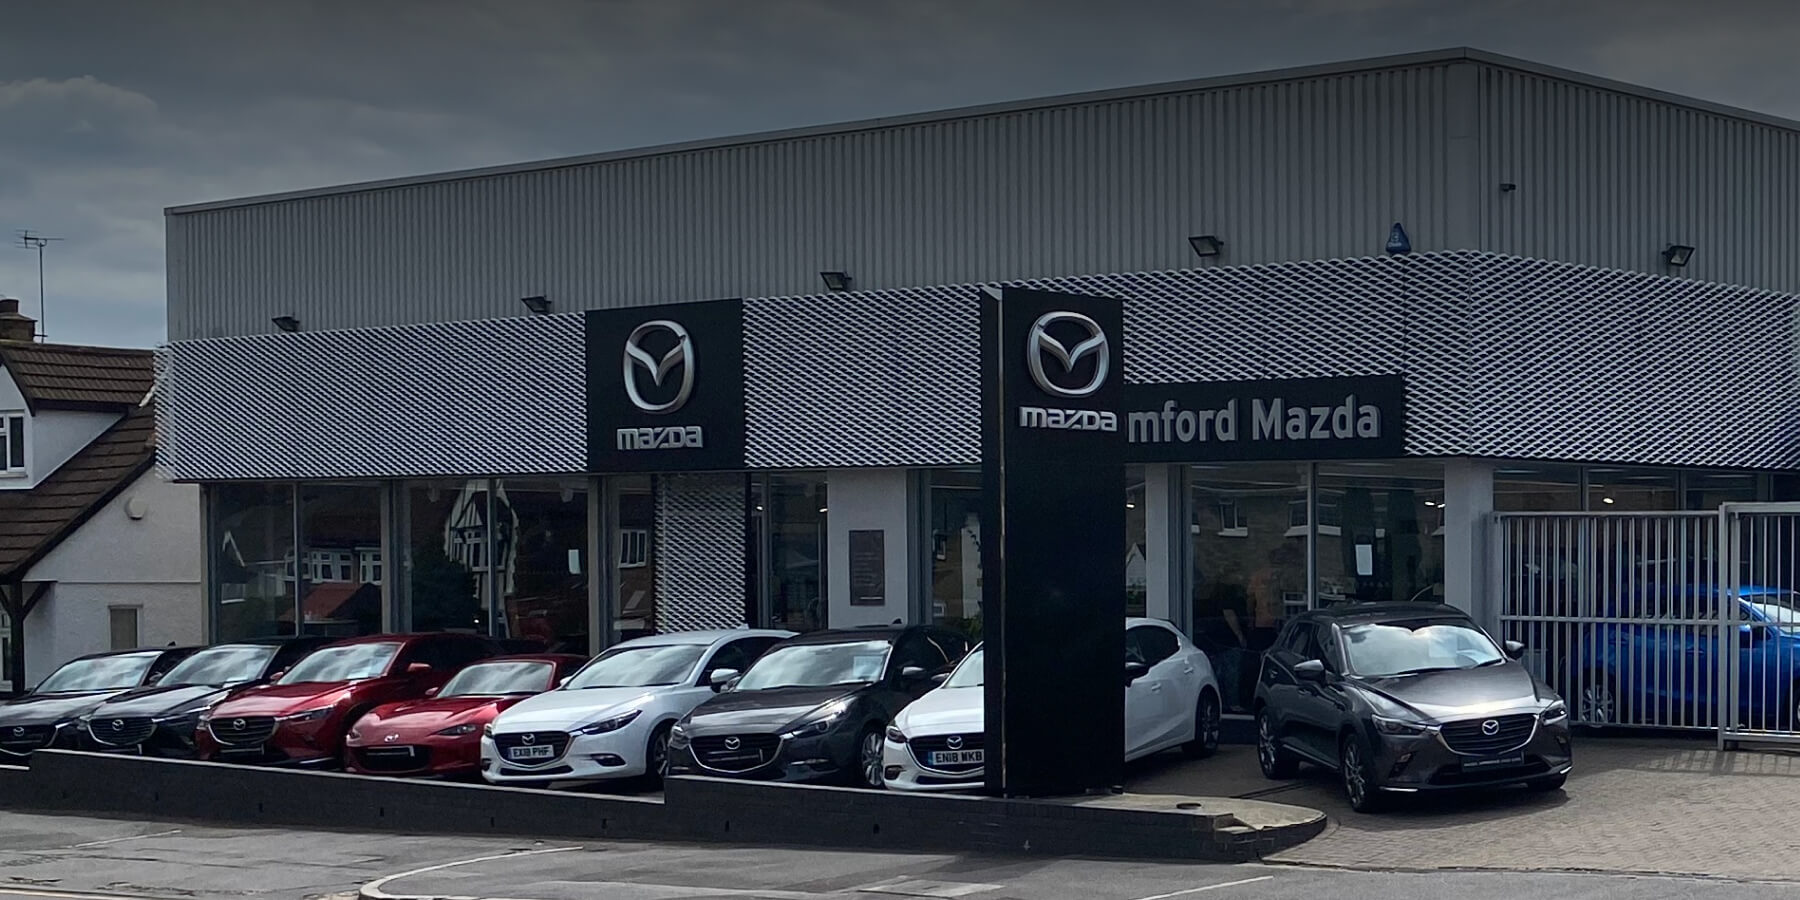 Romford Mazda